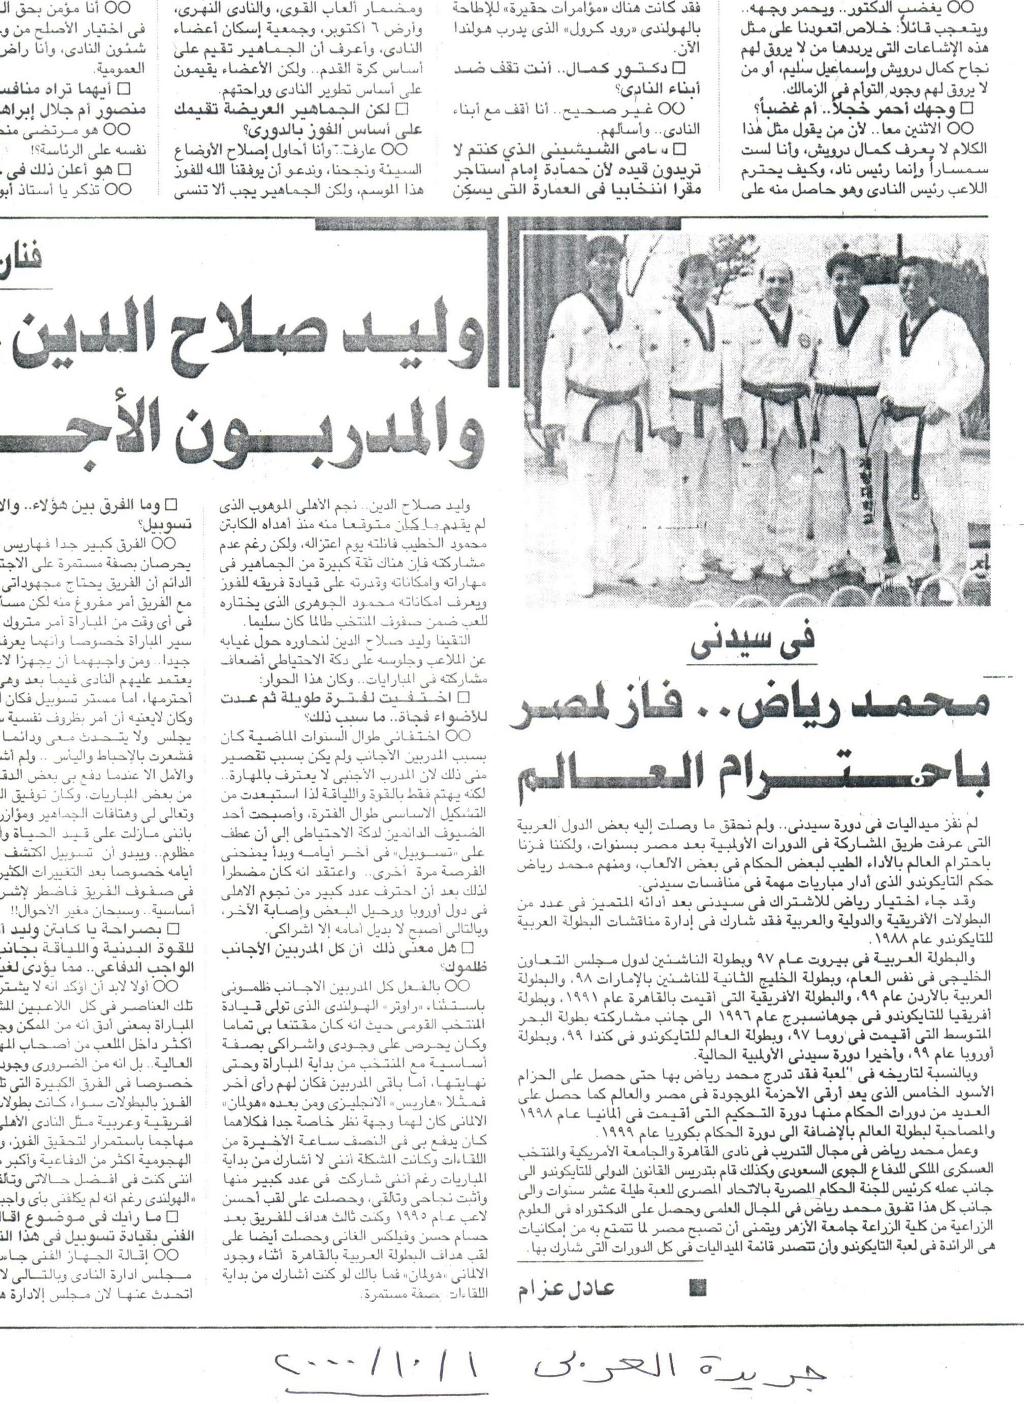 الحكم الدولي الأوليمبي محمد رياض فاز لمصر باحترام العالم في اولمبياد سيدني 2000 - جريدة العربي Z510